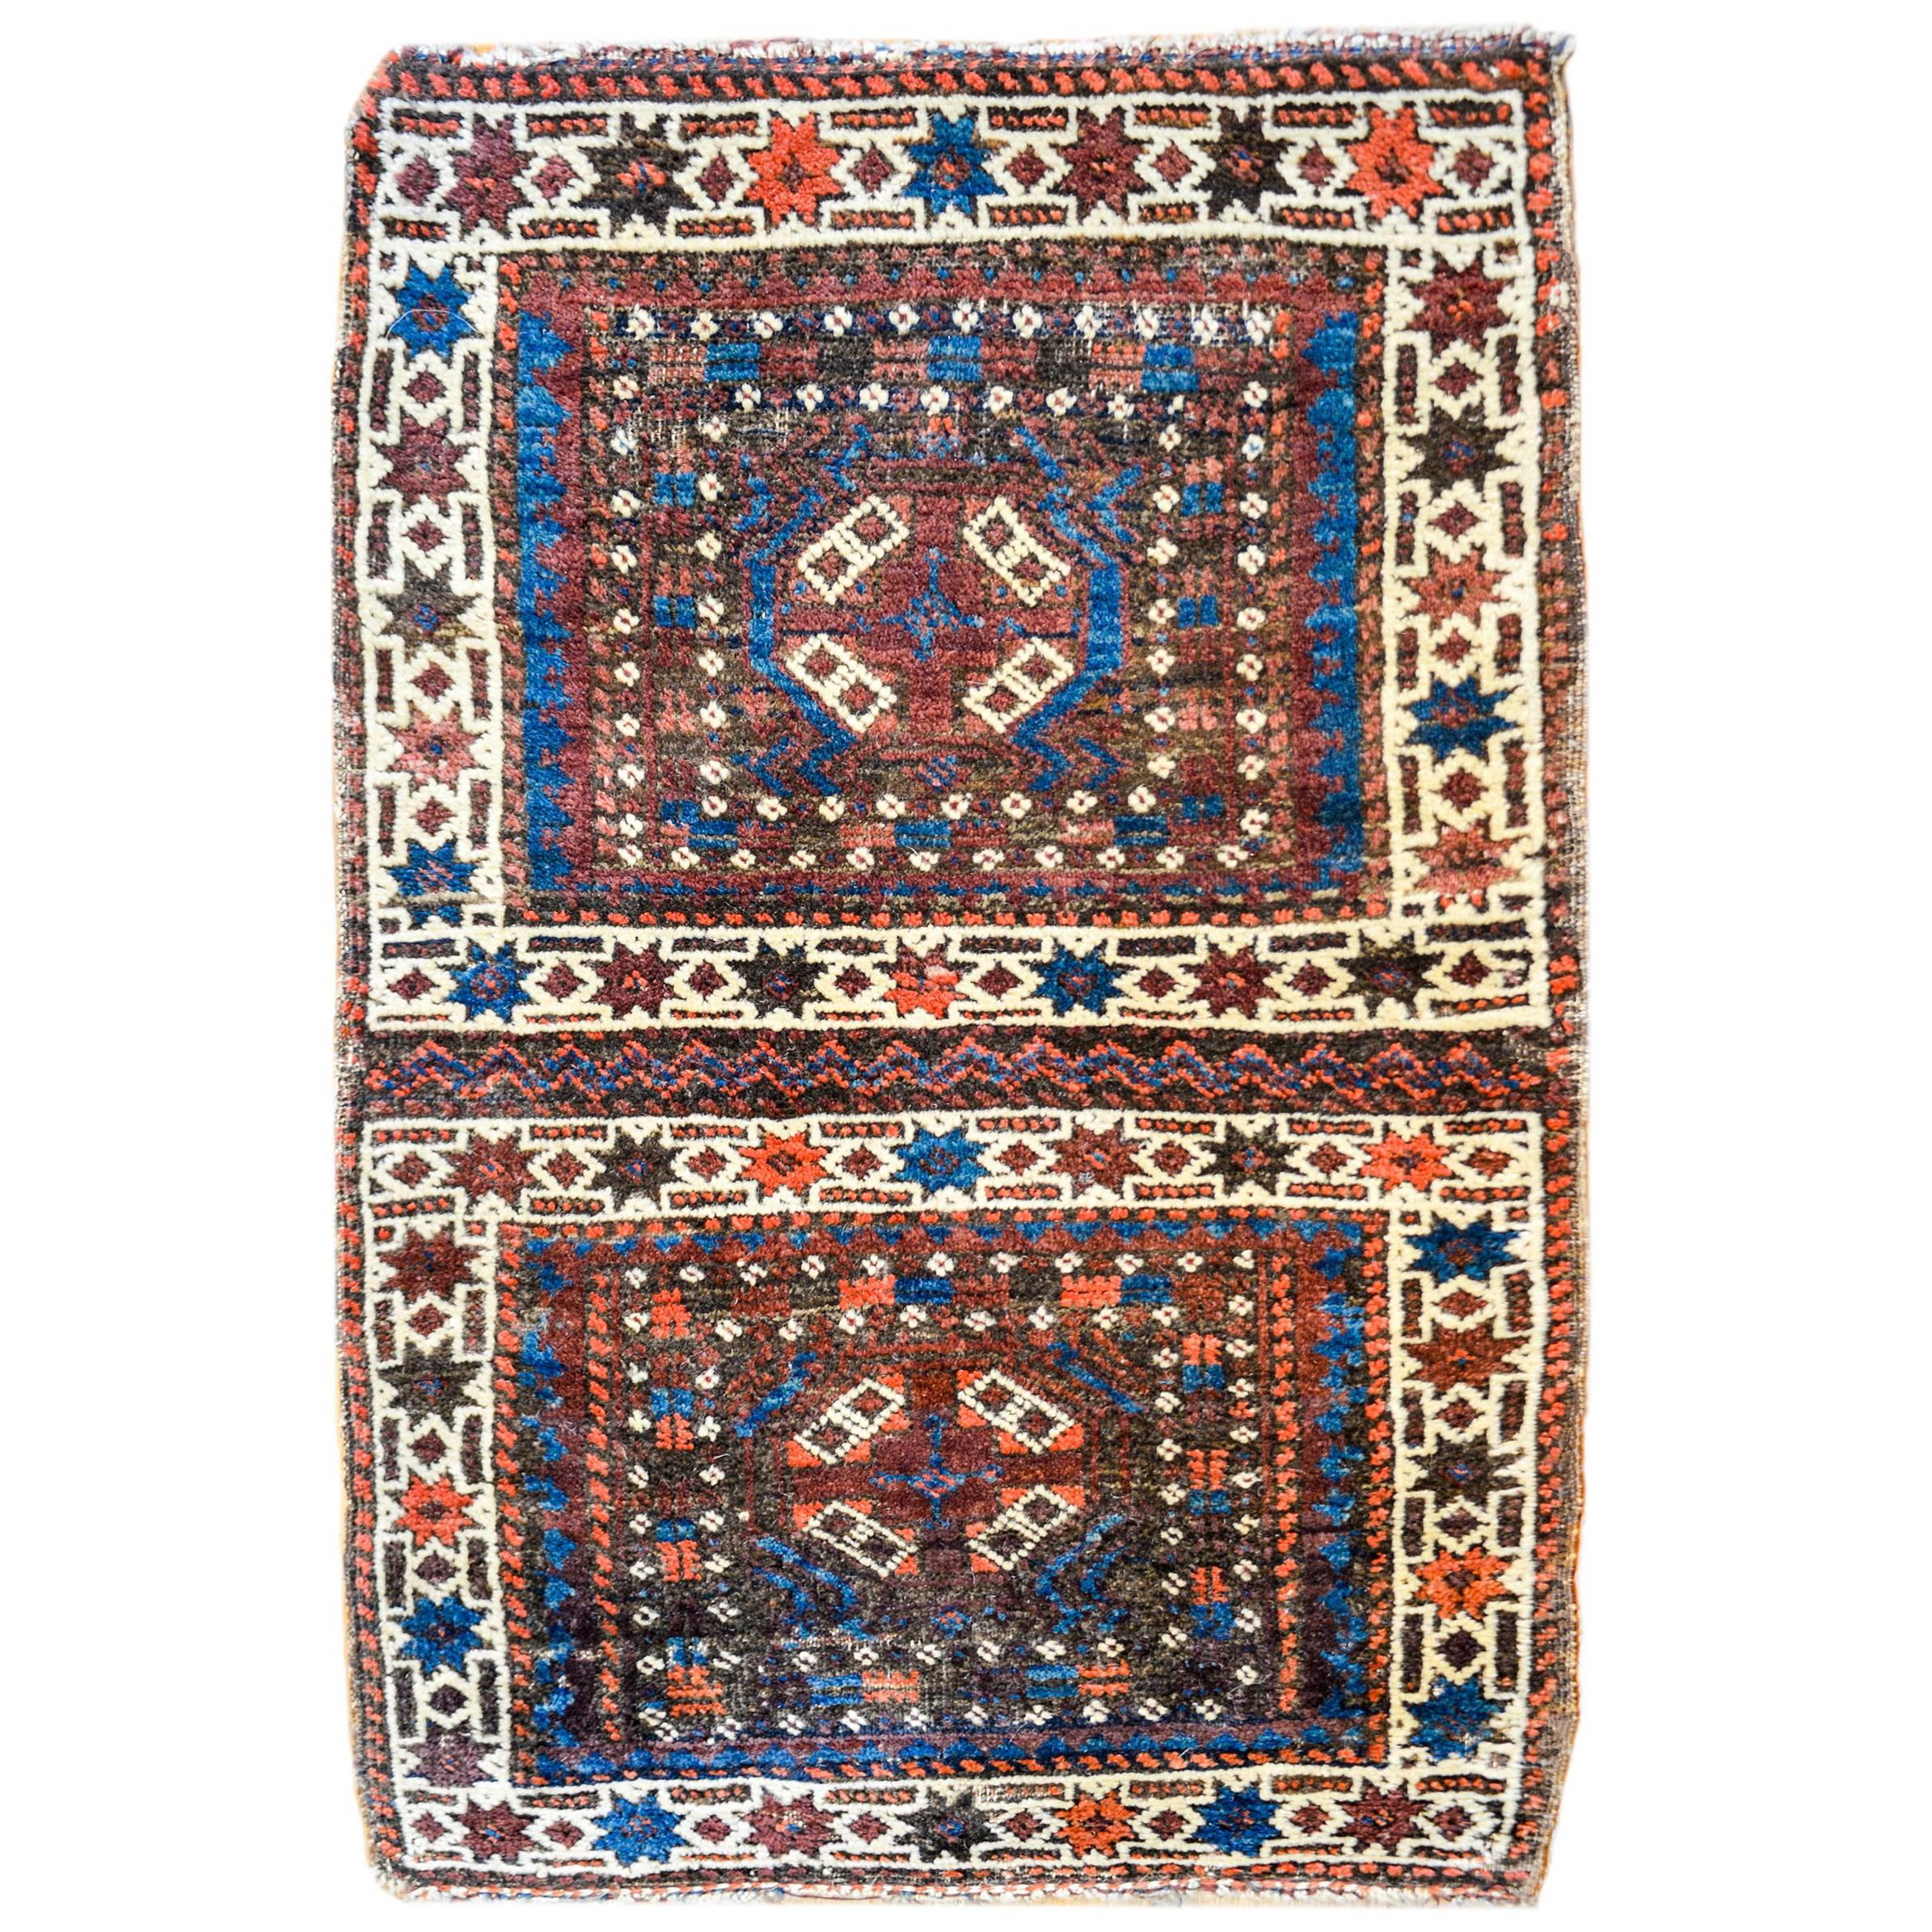 Schöner türkischer Teppich aus dem frühen 20. Jahrhundert